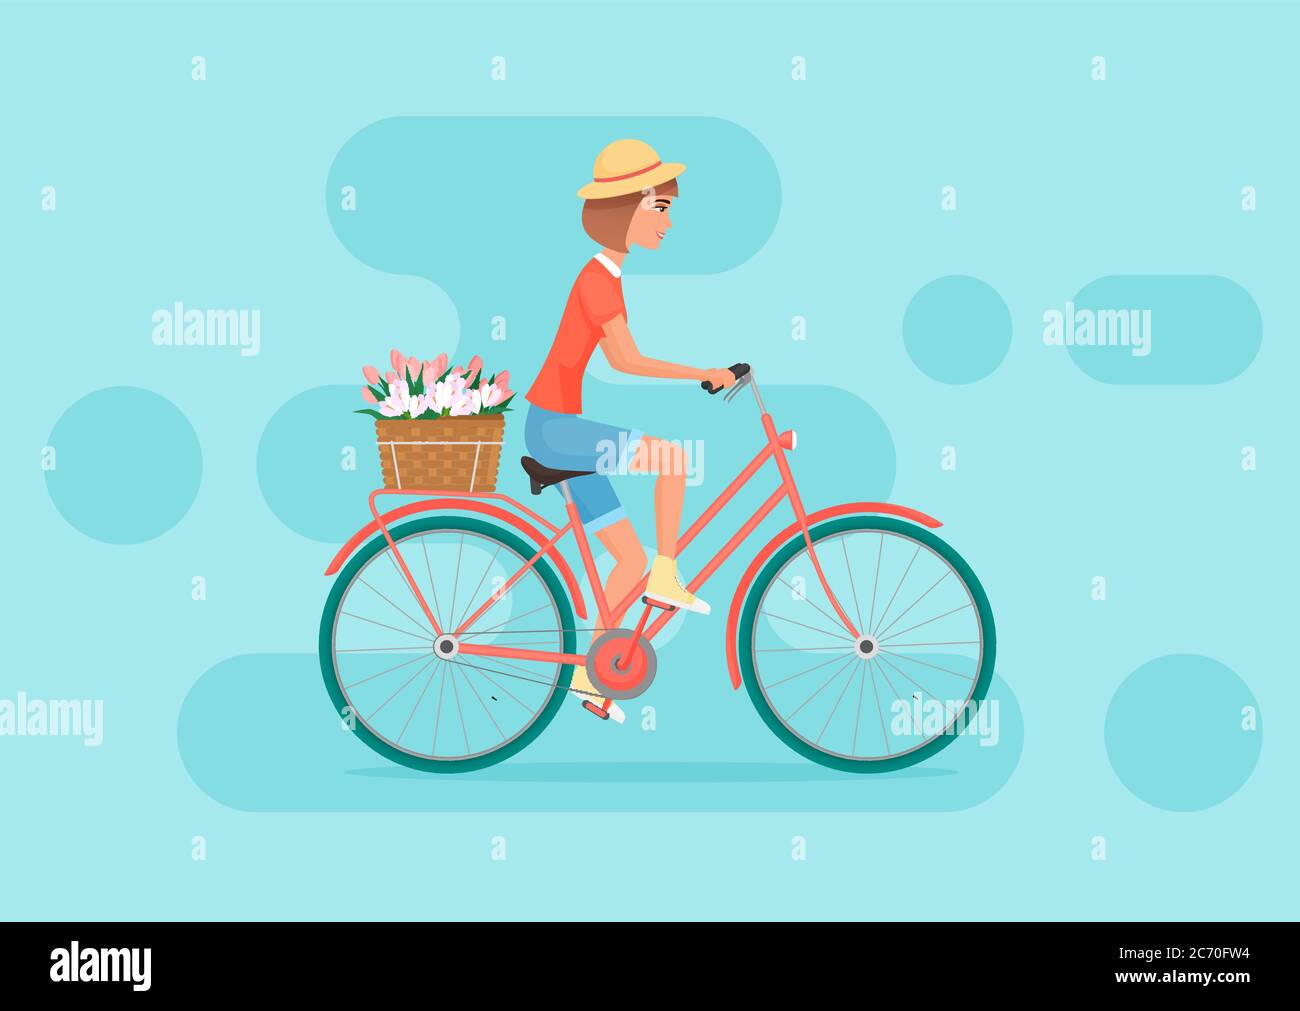 Vektor weibliche Charakter Design Fahrrad fahren. Junge hübsche Frau auf dem Fahrrad mit Blumen Stock Vektor